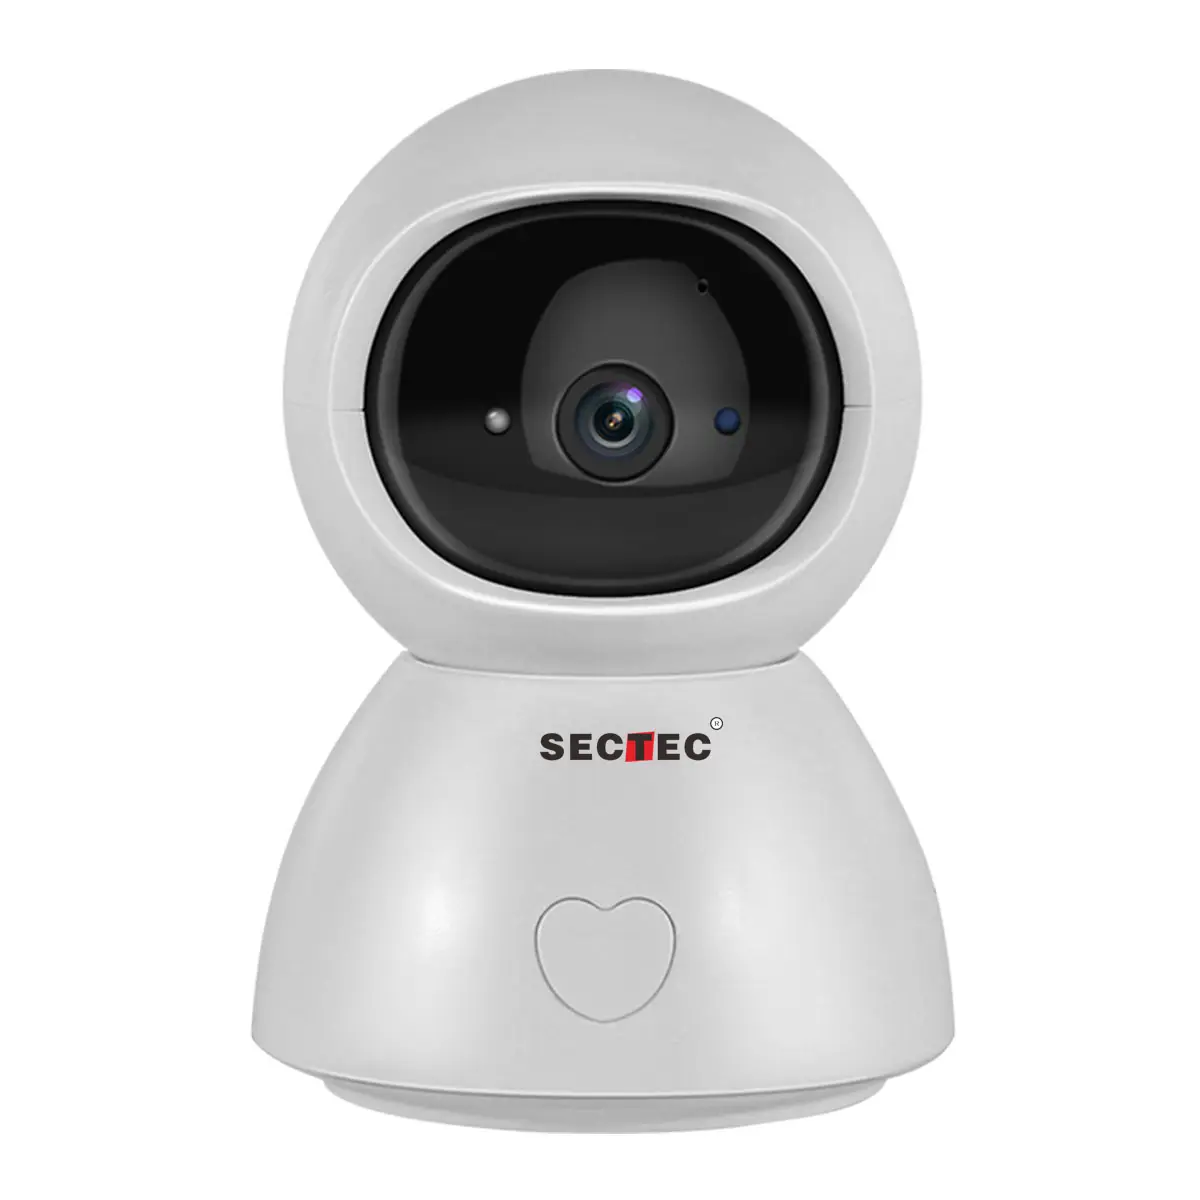 Sectec HD4MPスマートホームセキュリティカメラワイヤレスカメラCCTV IP監視システム人間検出追跡Wifiカメラ